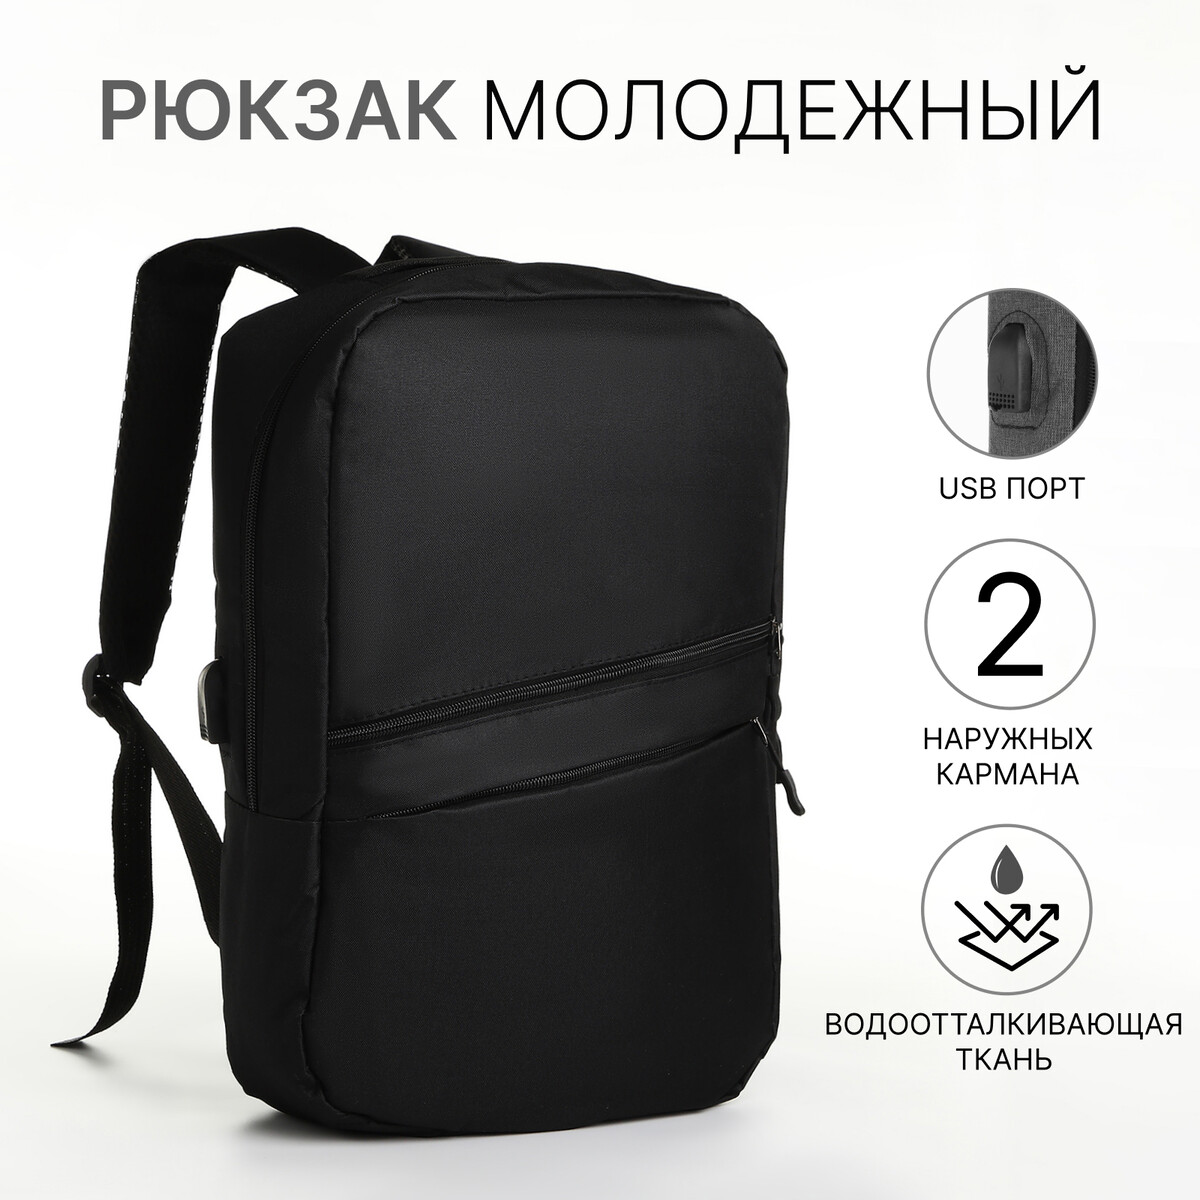 Рюкзак городской с usb из текстиля на молнии, 2 кармана, цвет черный рюкзак городской с usb зарядкой sebar